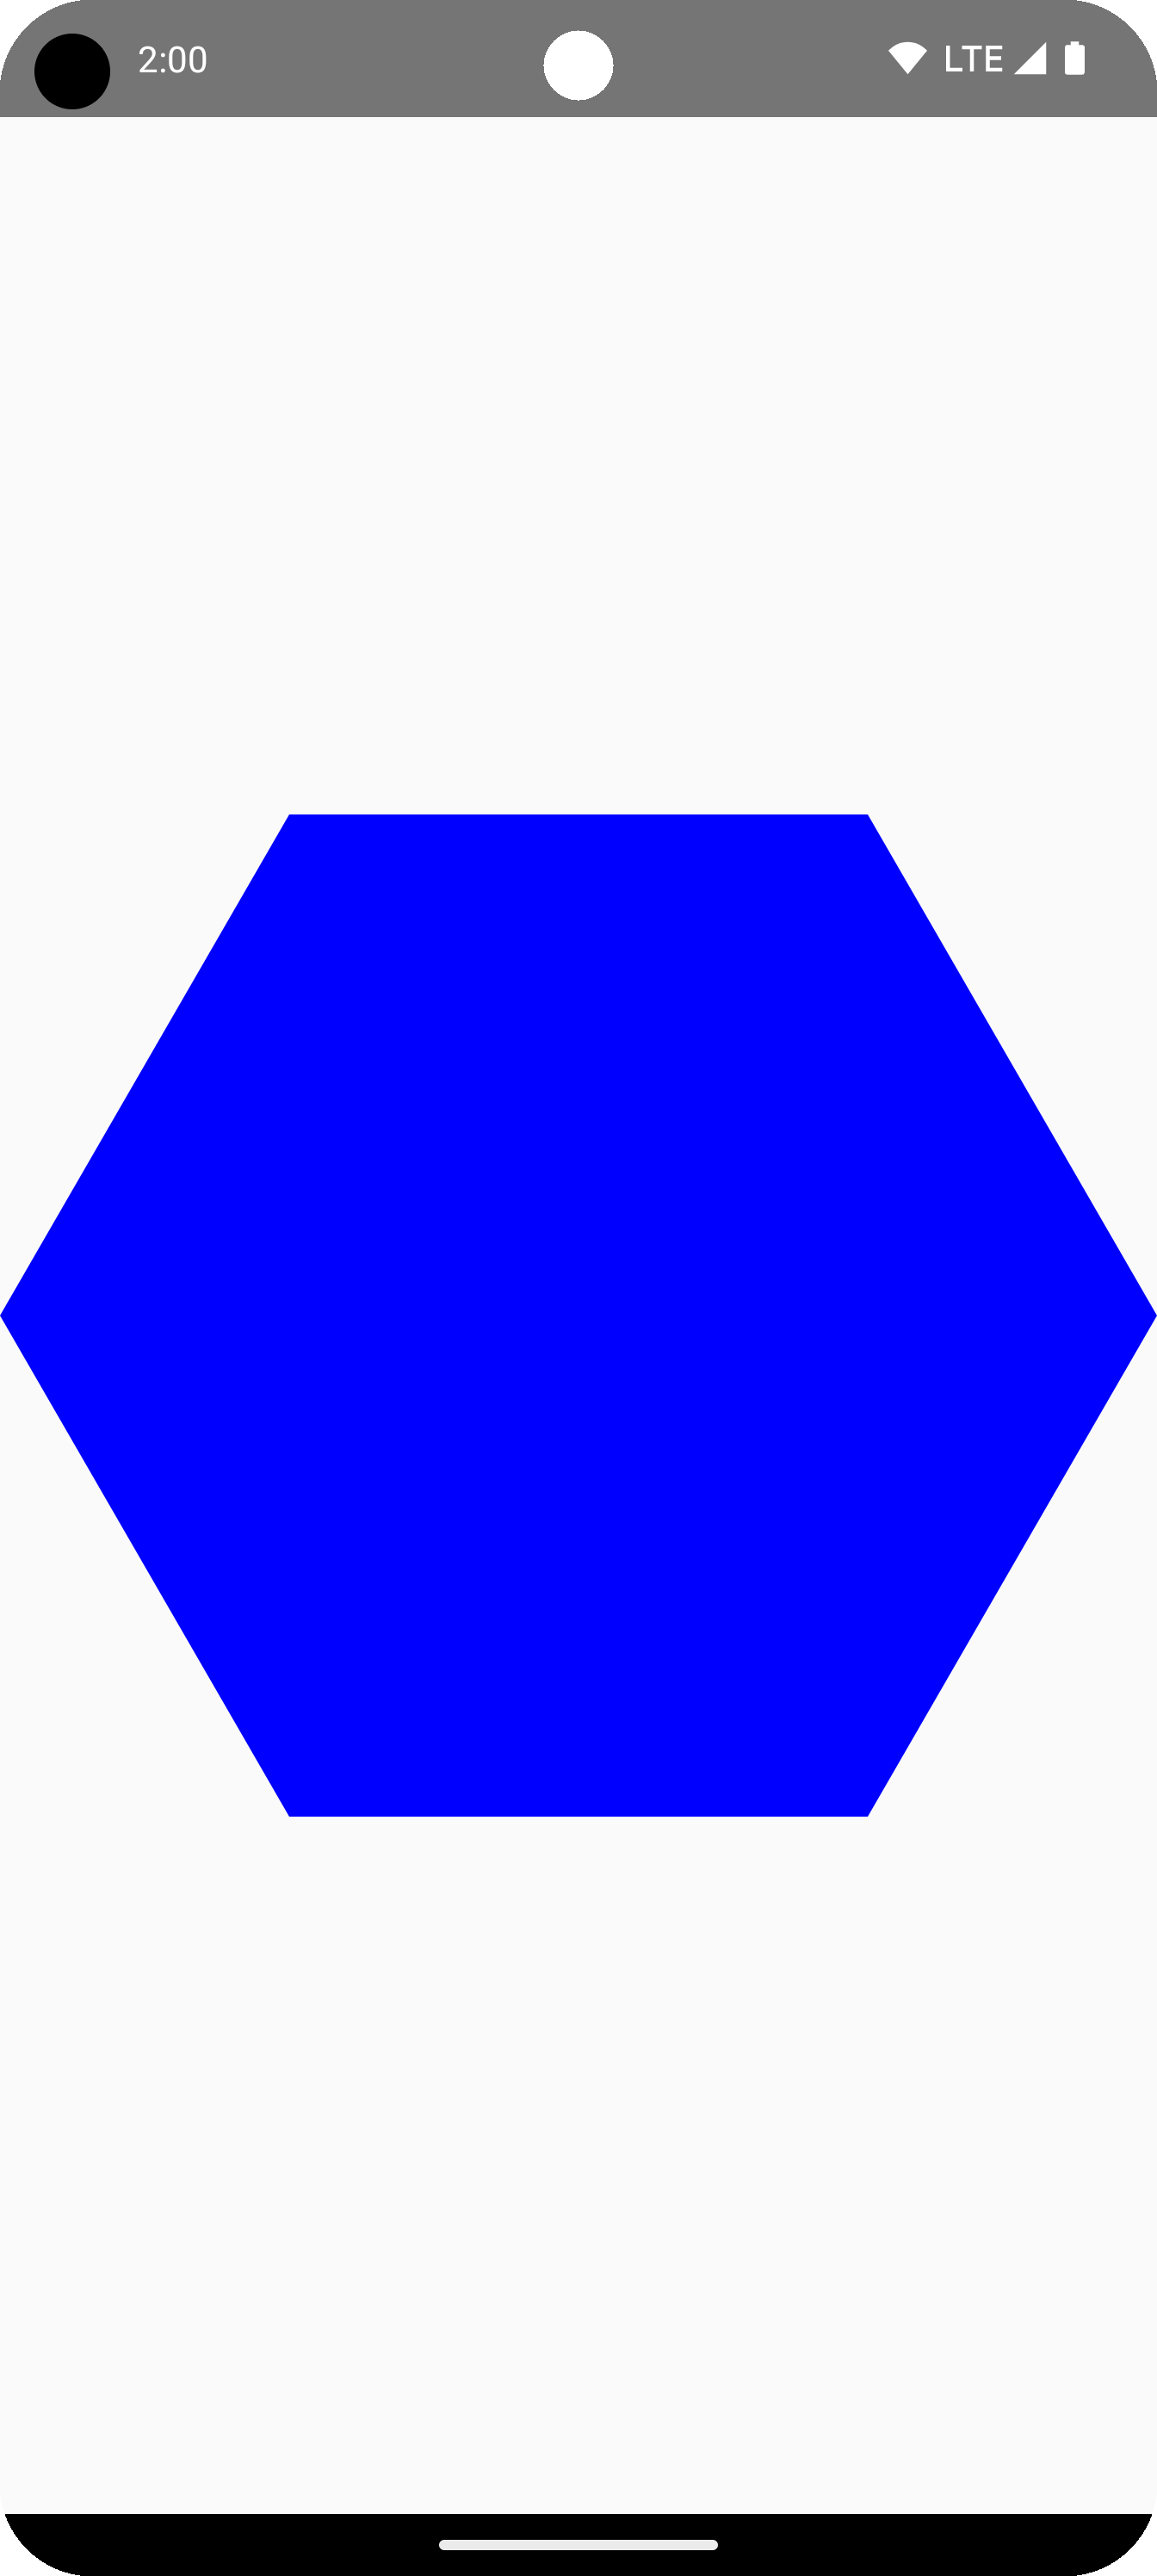 รูปหกเหลี่ยมสีน้ำเงินใจกลางพื้นที่วาดภาพ